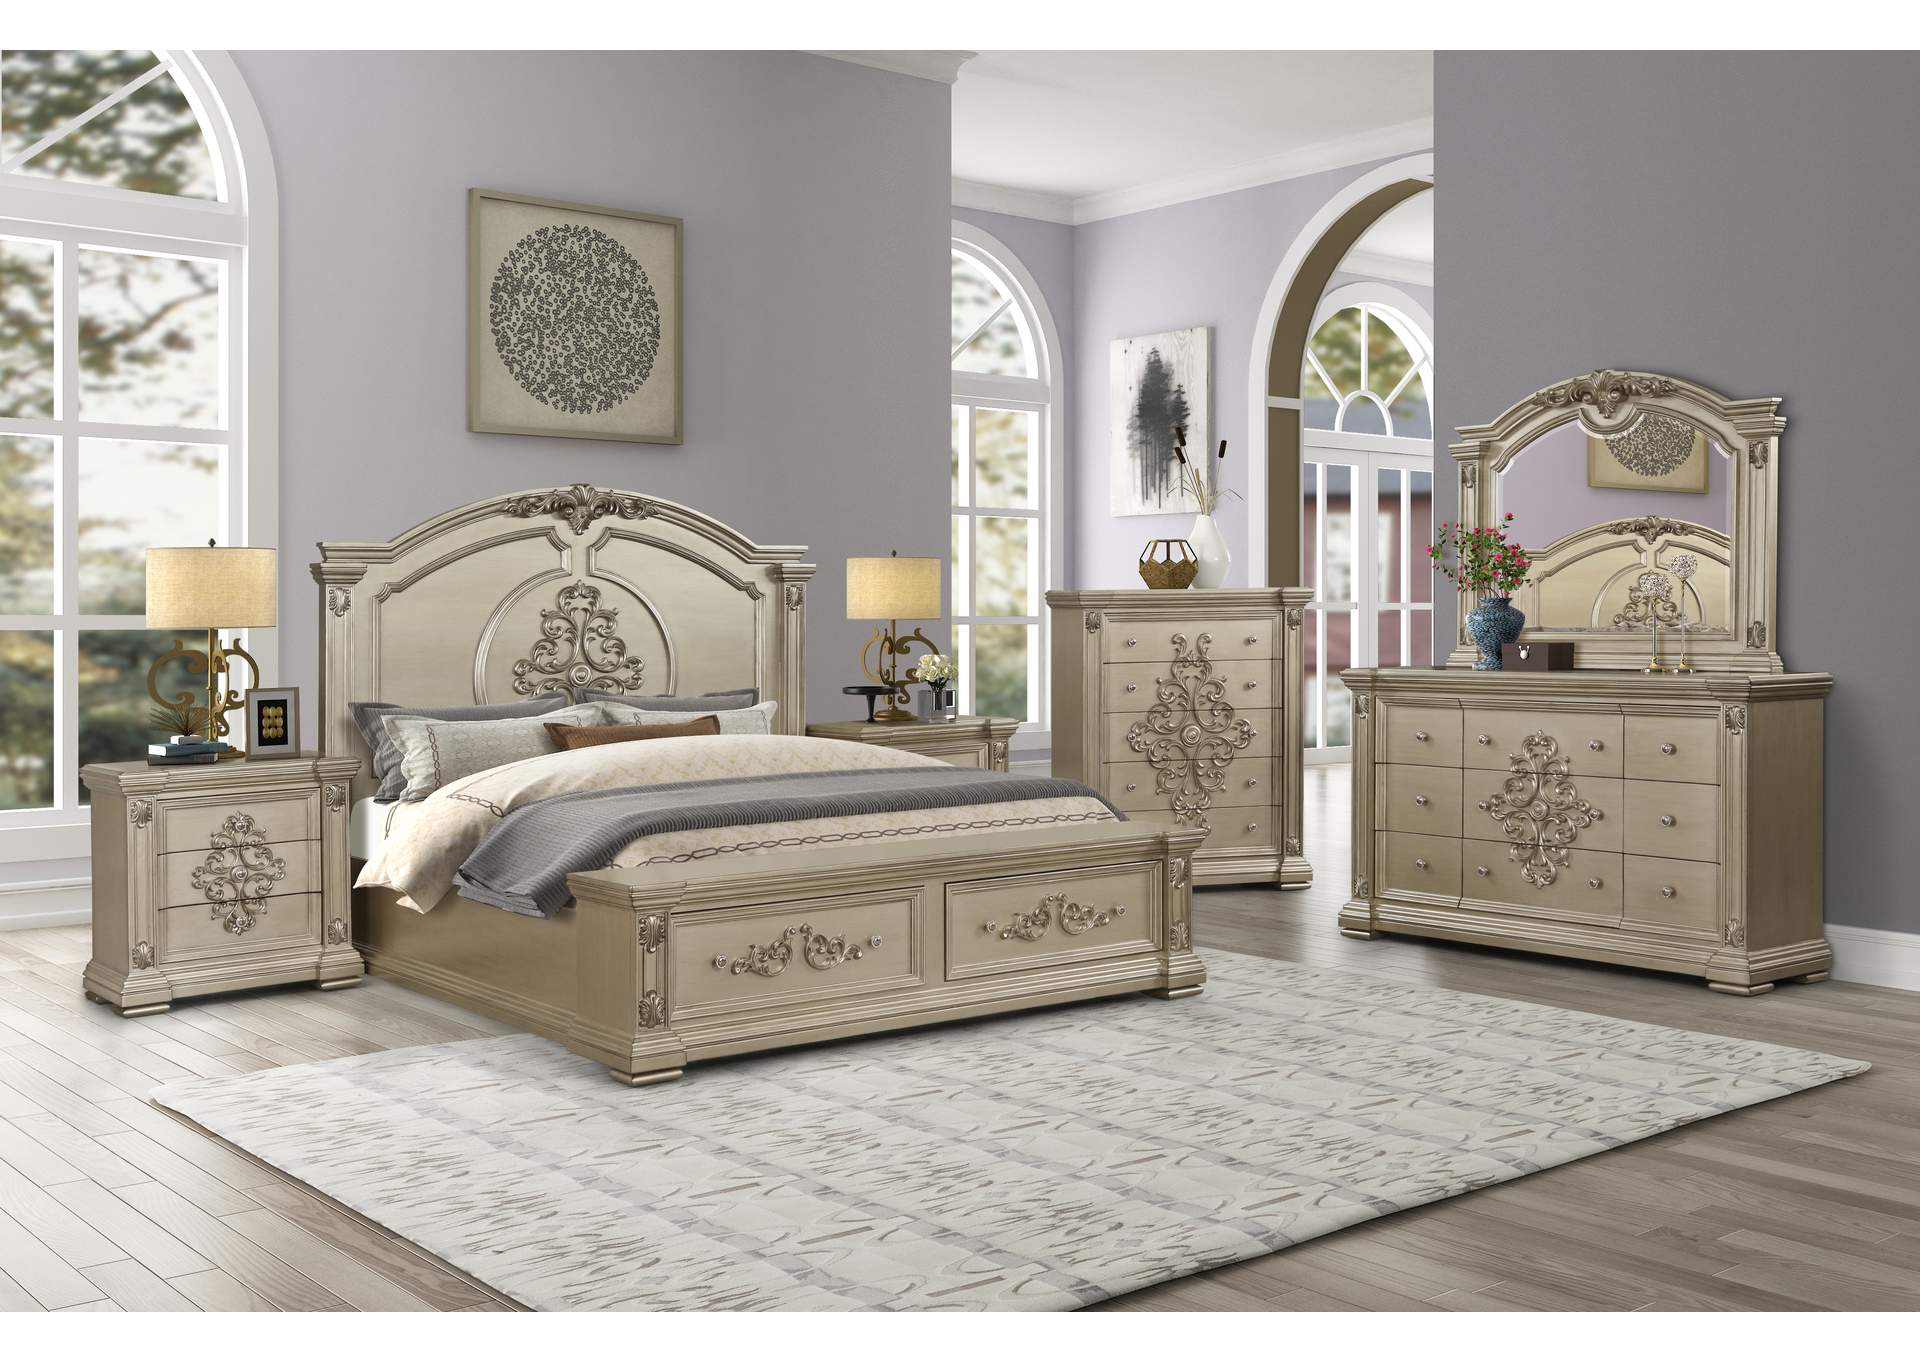 Alicia Beige Queen Bedroom Set - Bed, Dresser, Mirror, 2 Nightstands, Chest,Cosmos Furniture